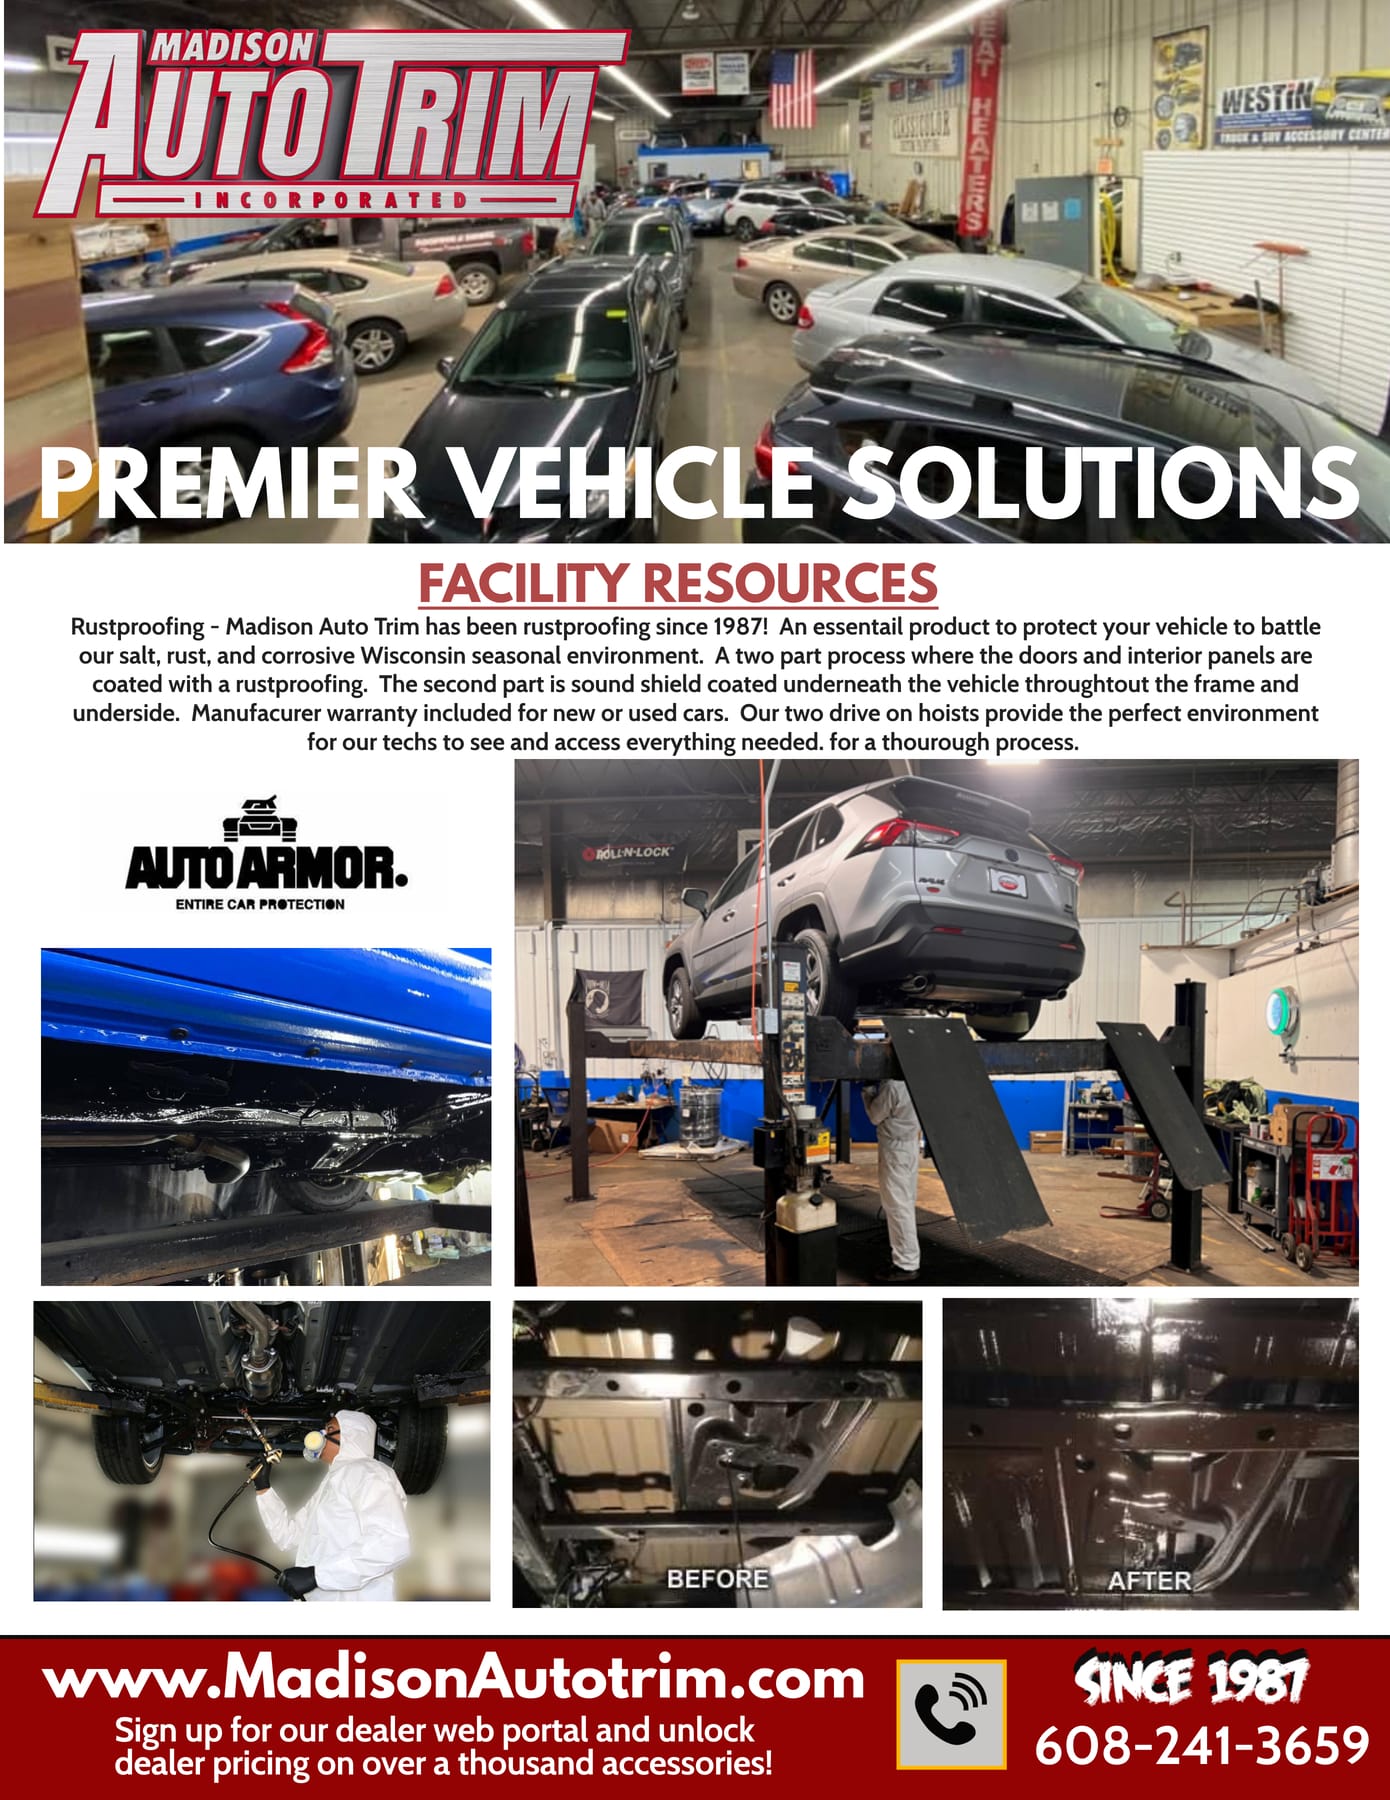 Lumbar Support - Madison Auto Trim, Inc.